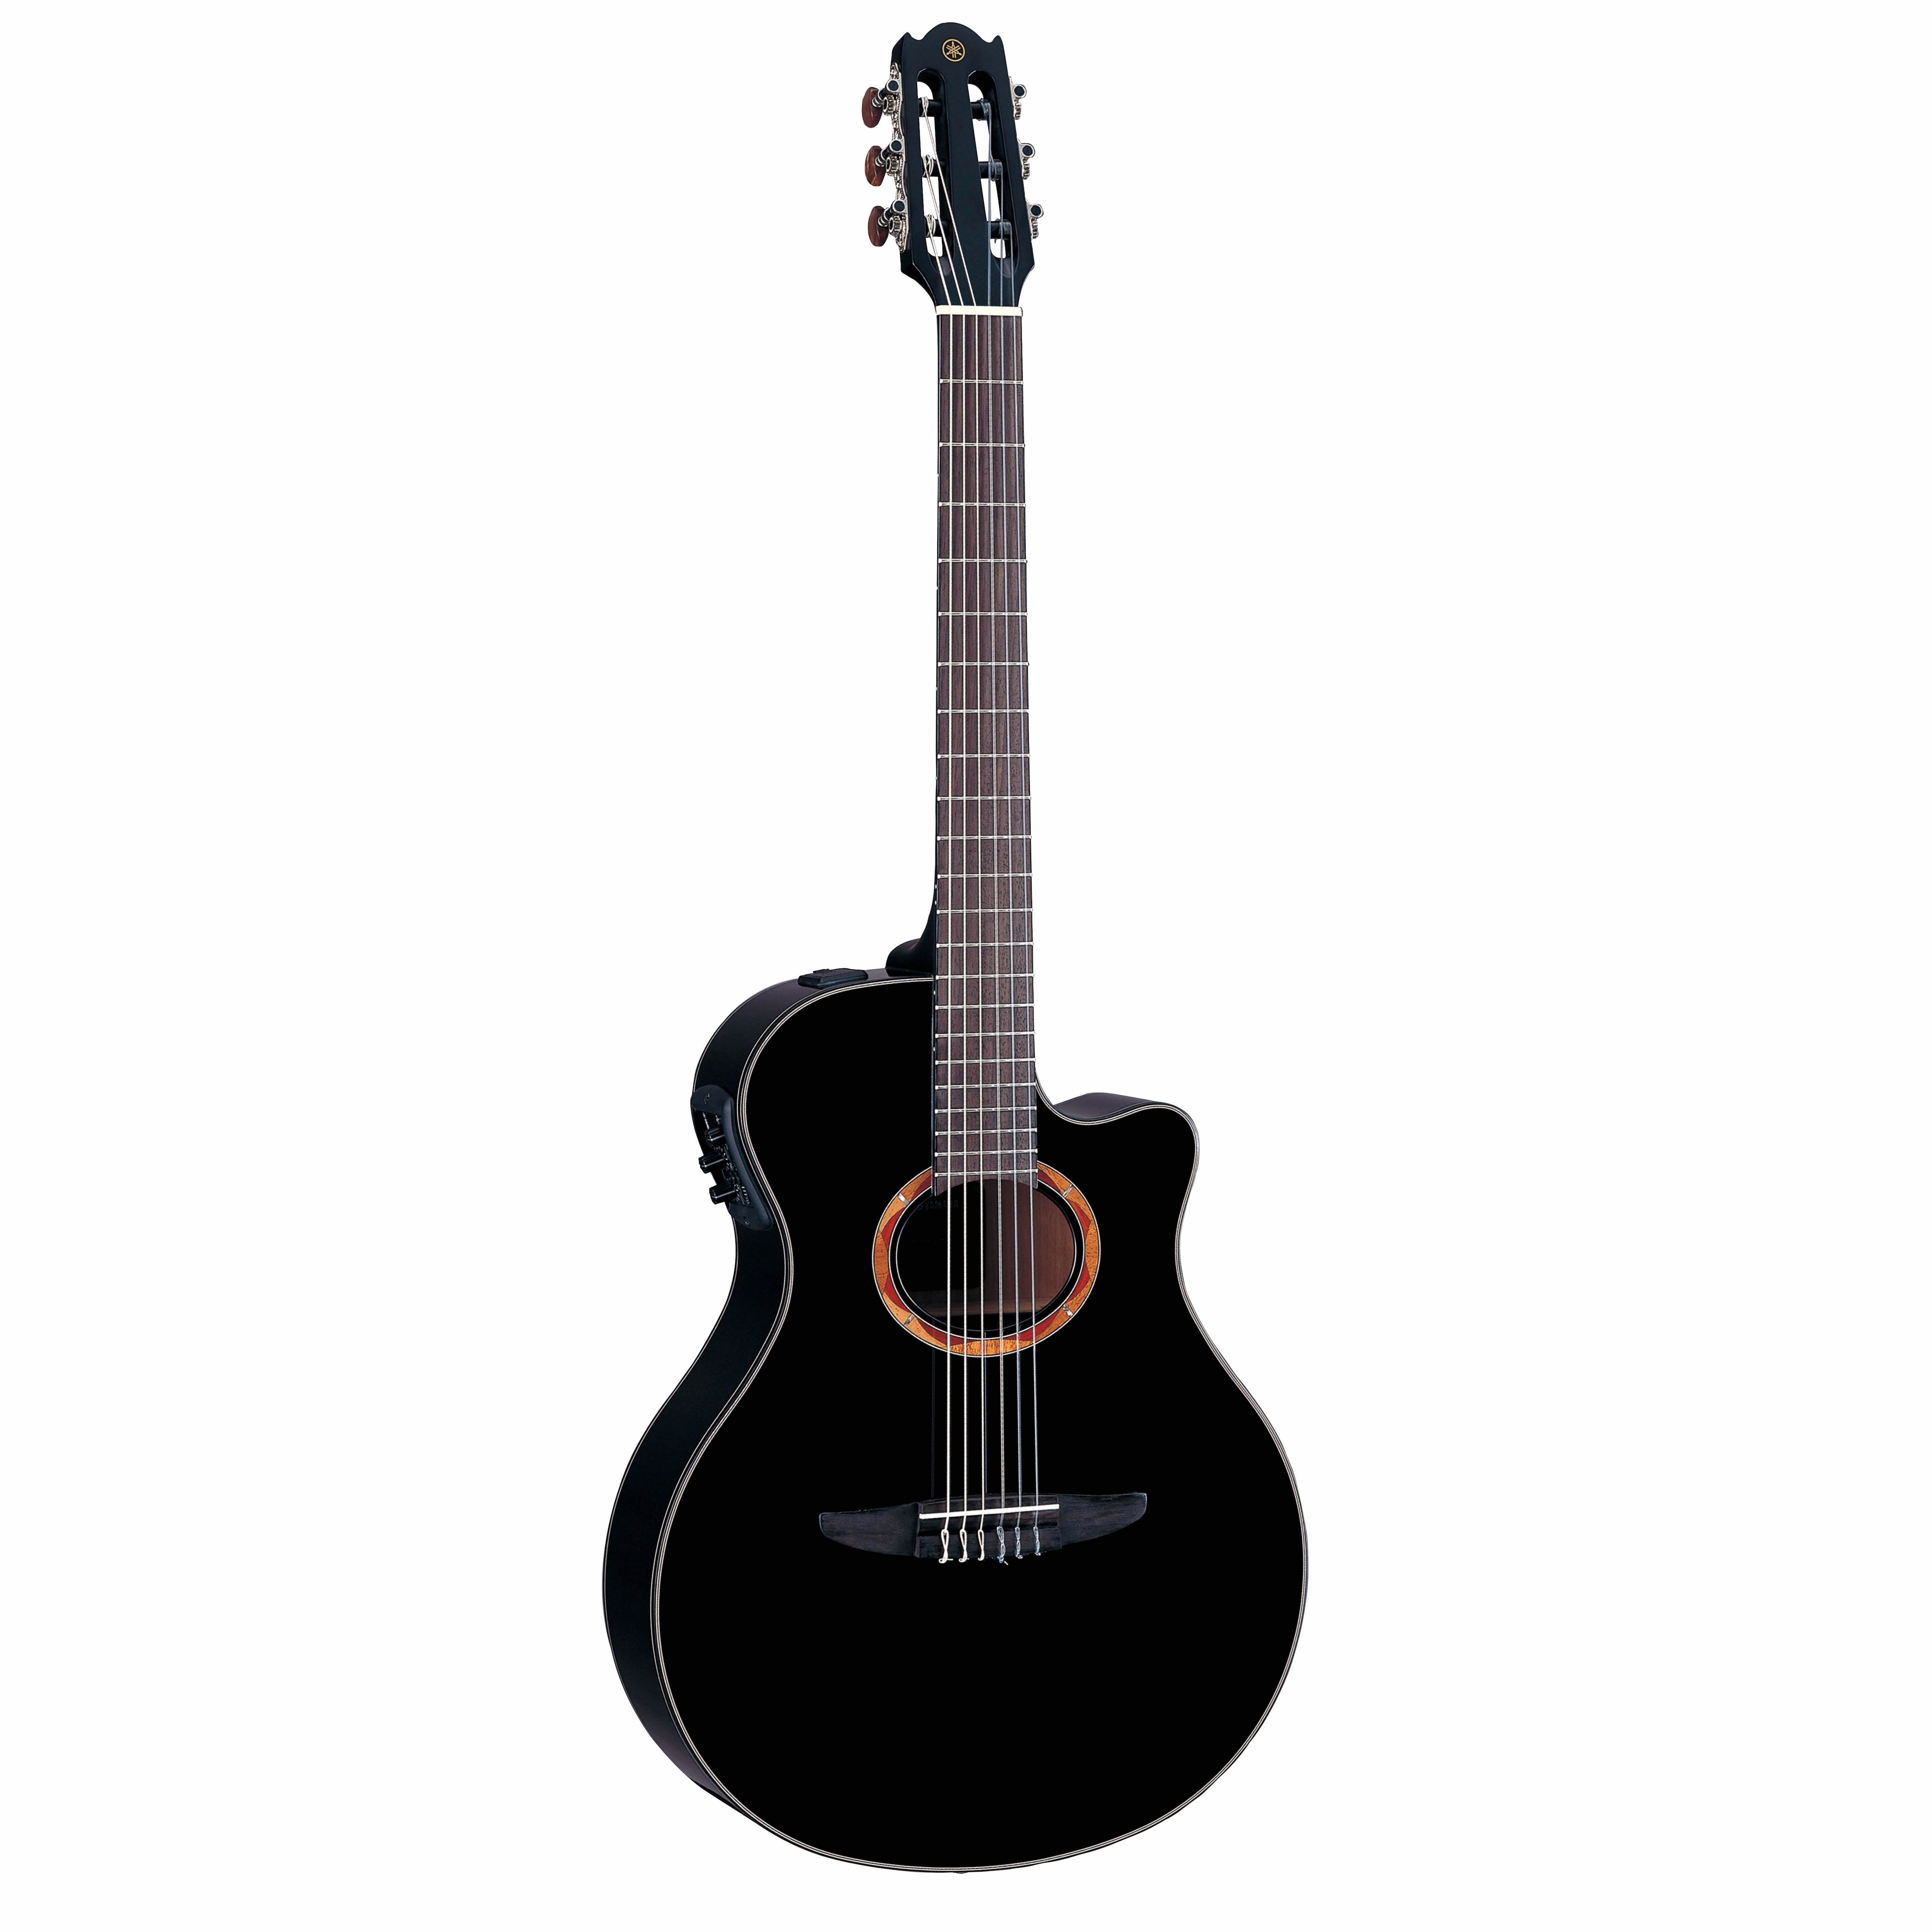 ヤマハ | NXシリーズ (2009年発売モデル) - クラシックギター 